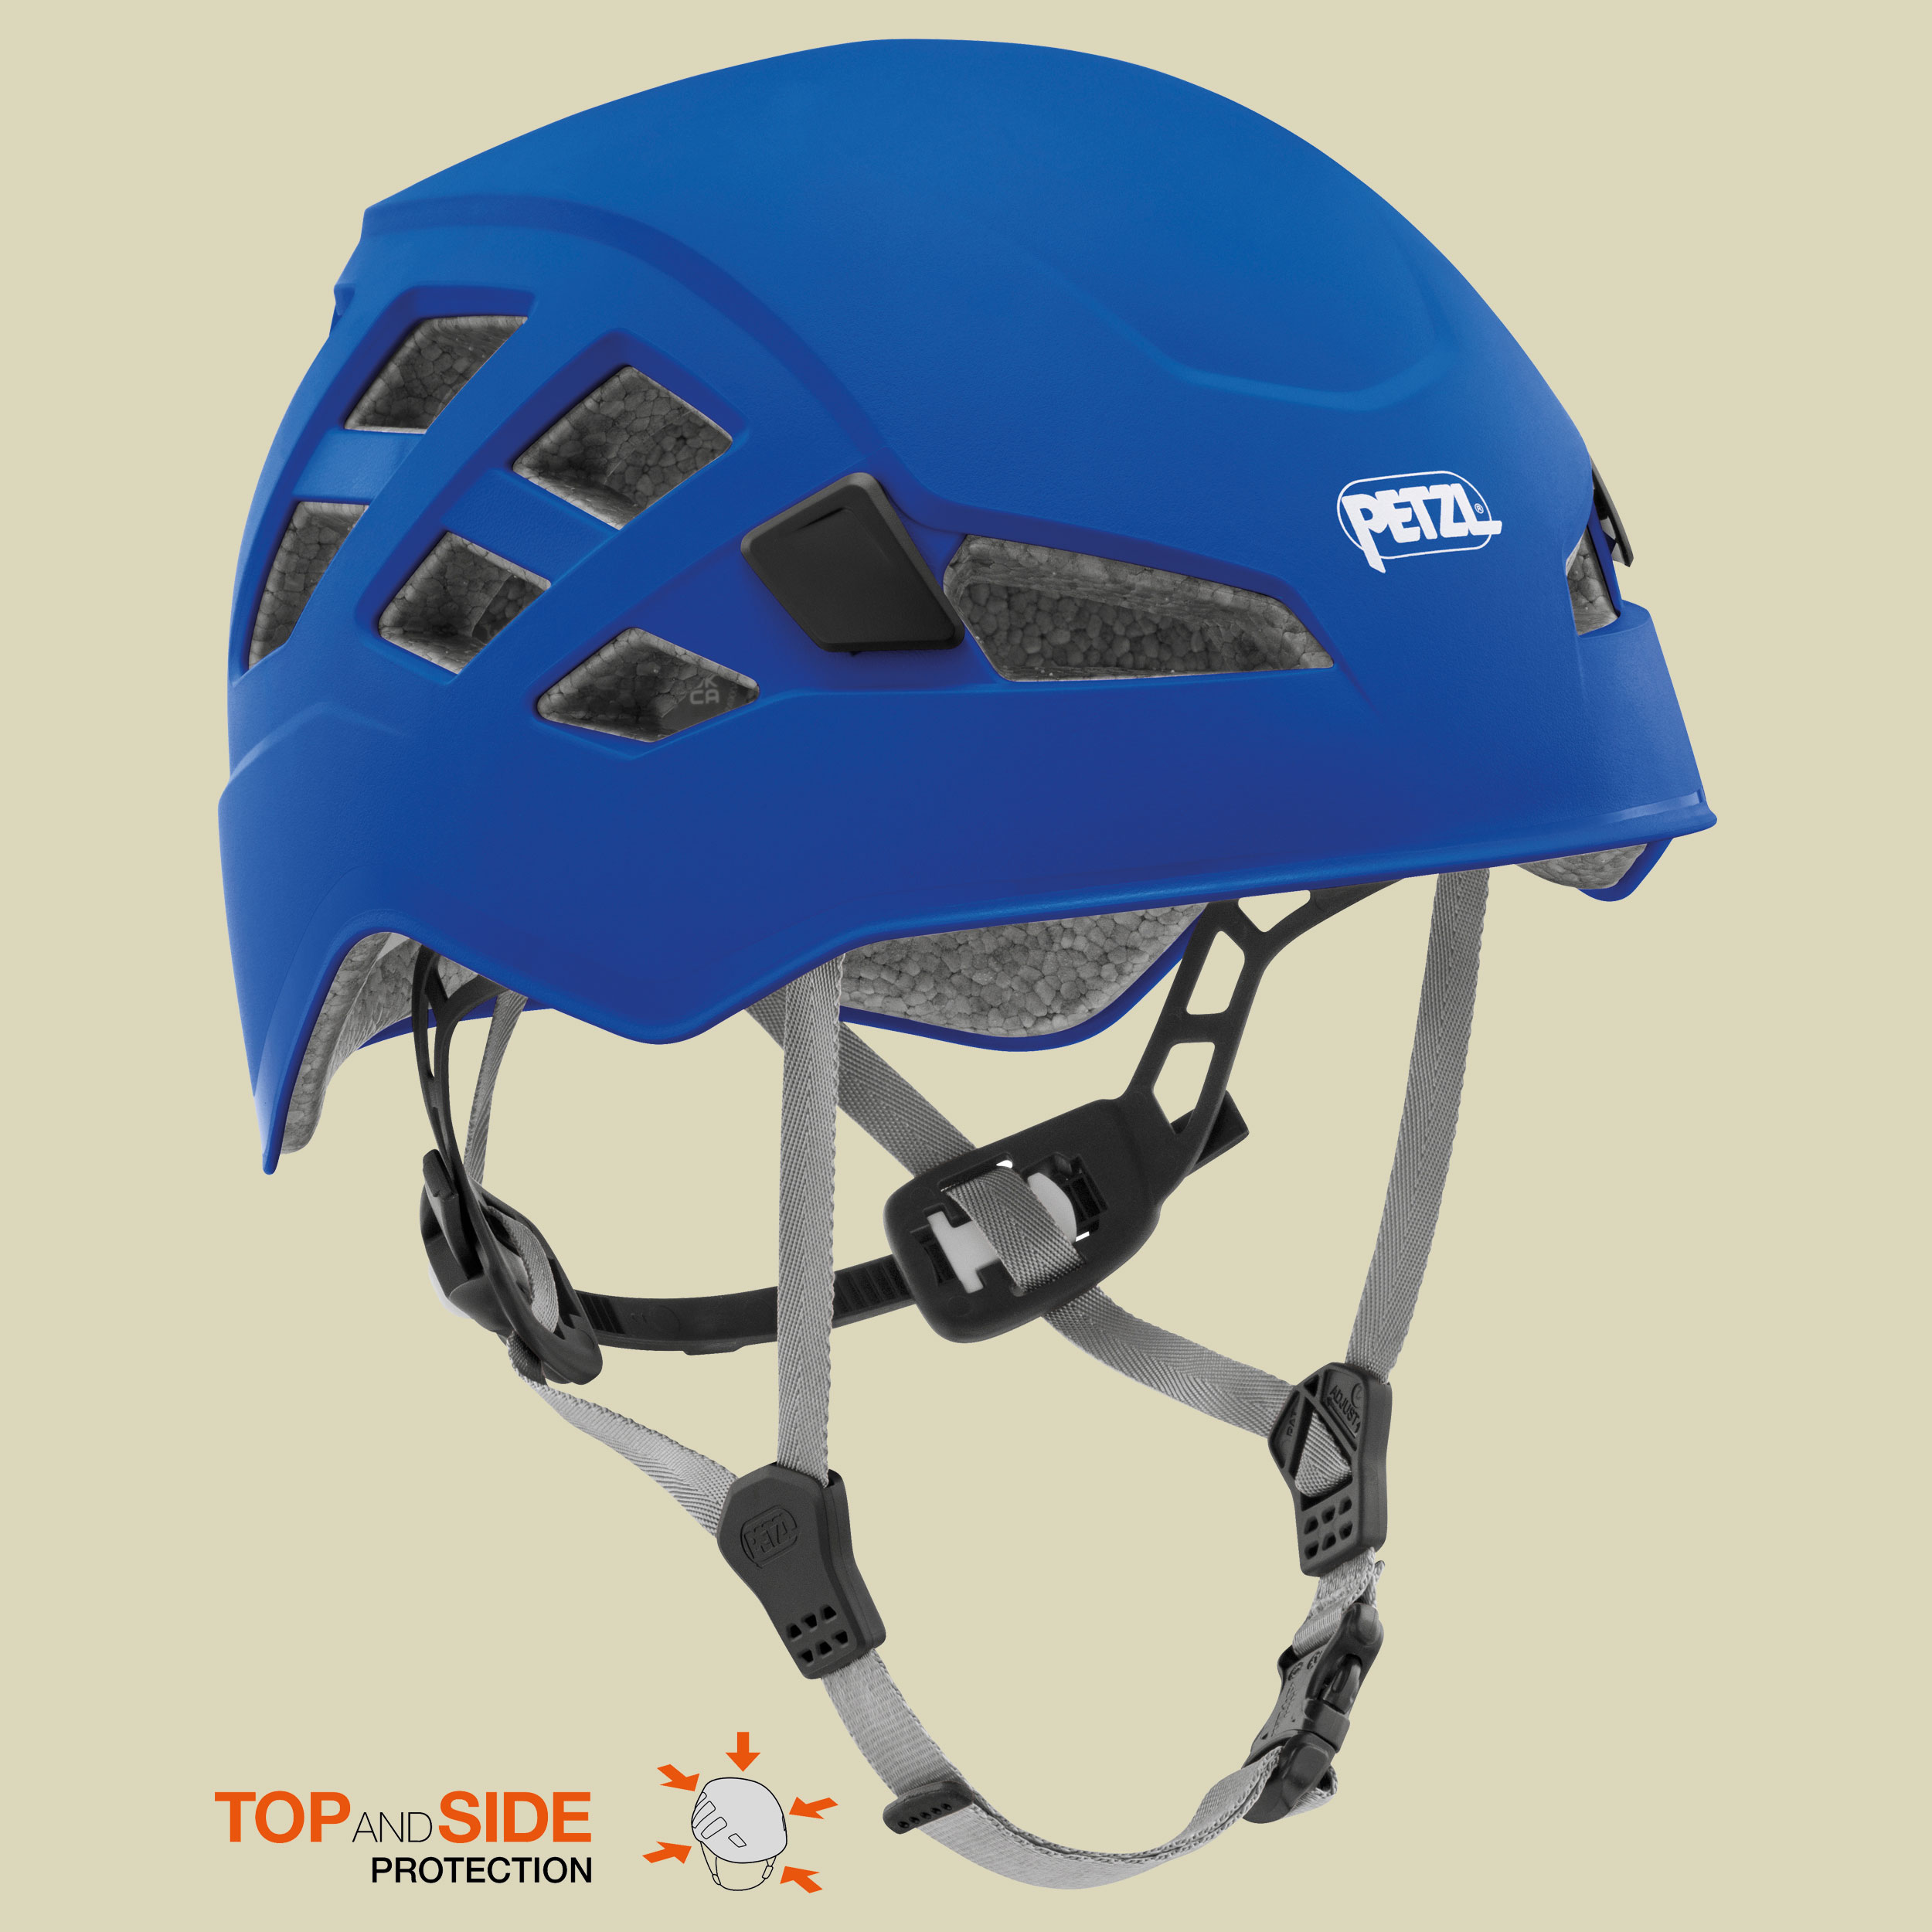 Boreo Helm Größe S/M Farbe blau